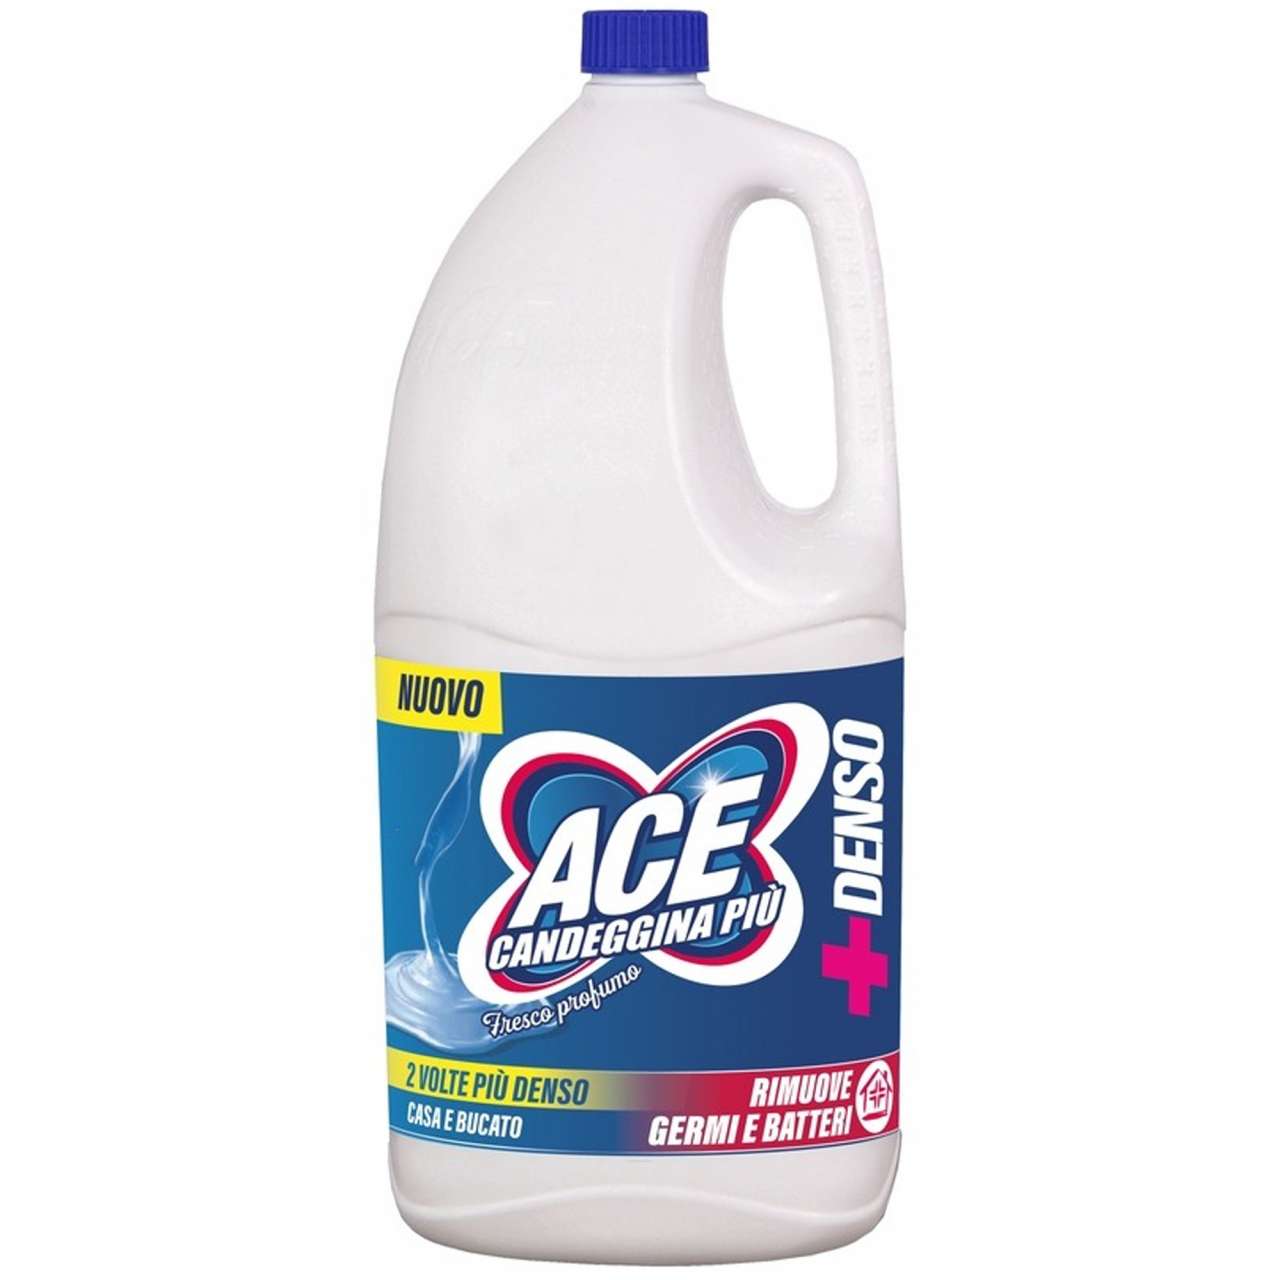 Ace denso più fresco profumo Lt2.5